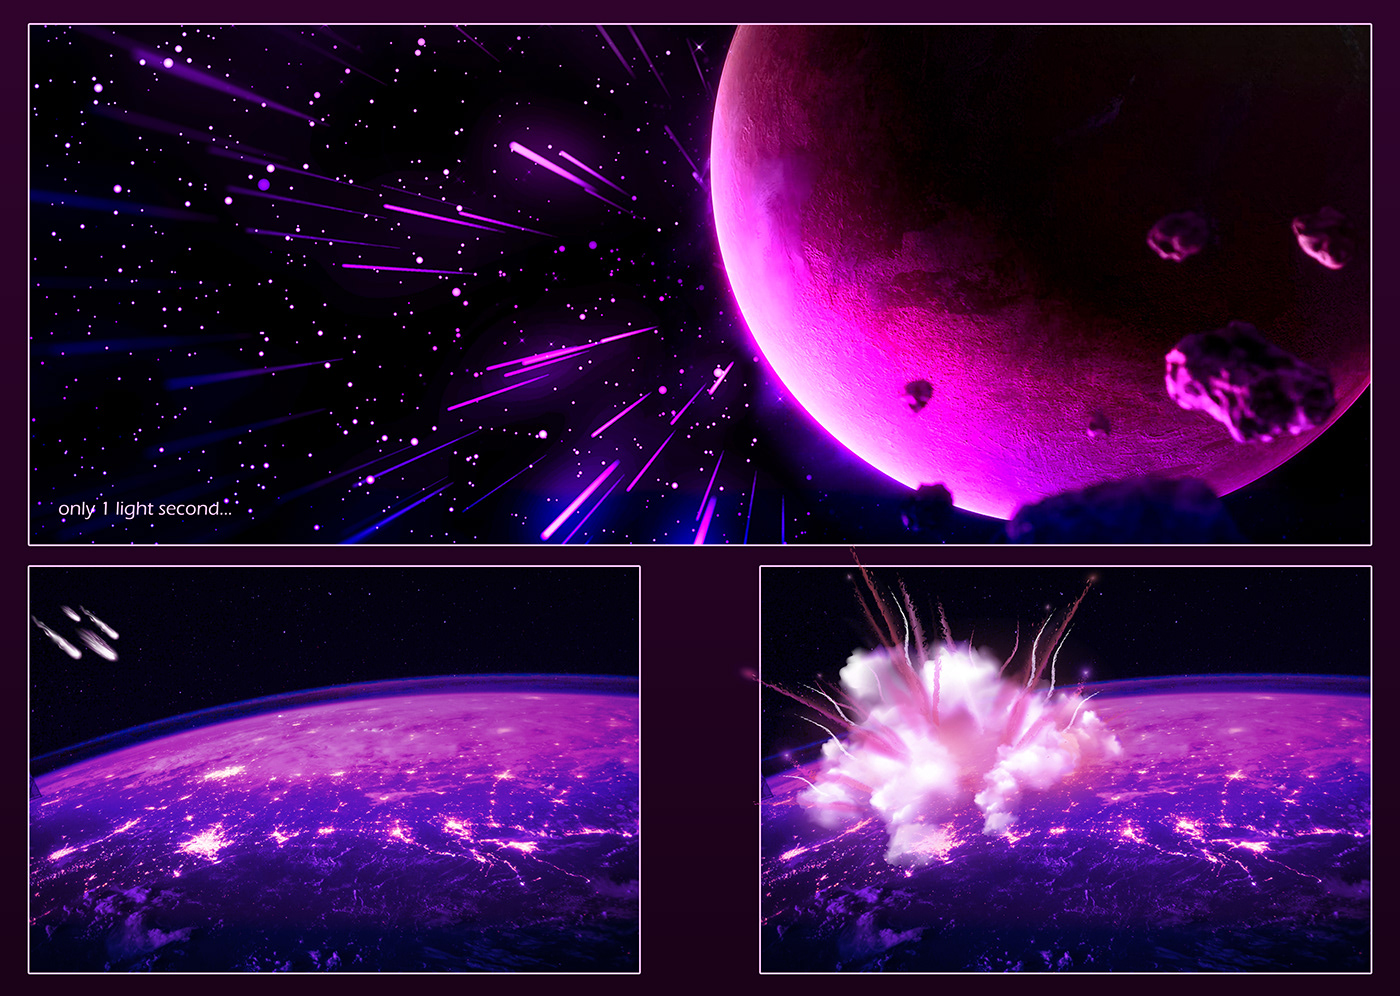 adventure astronaut BigBang destroy luxury modern star wars survival universe versatility